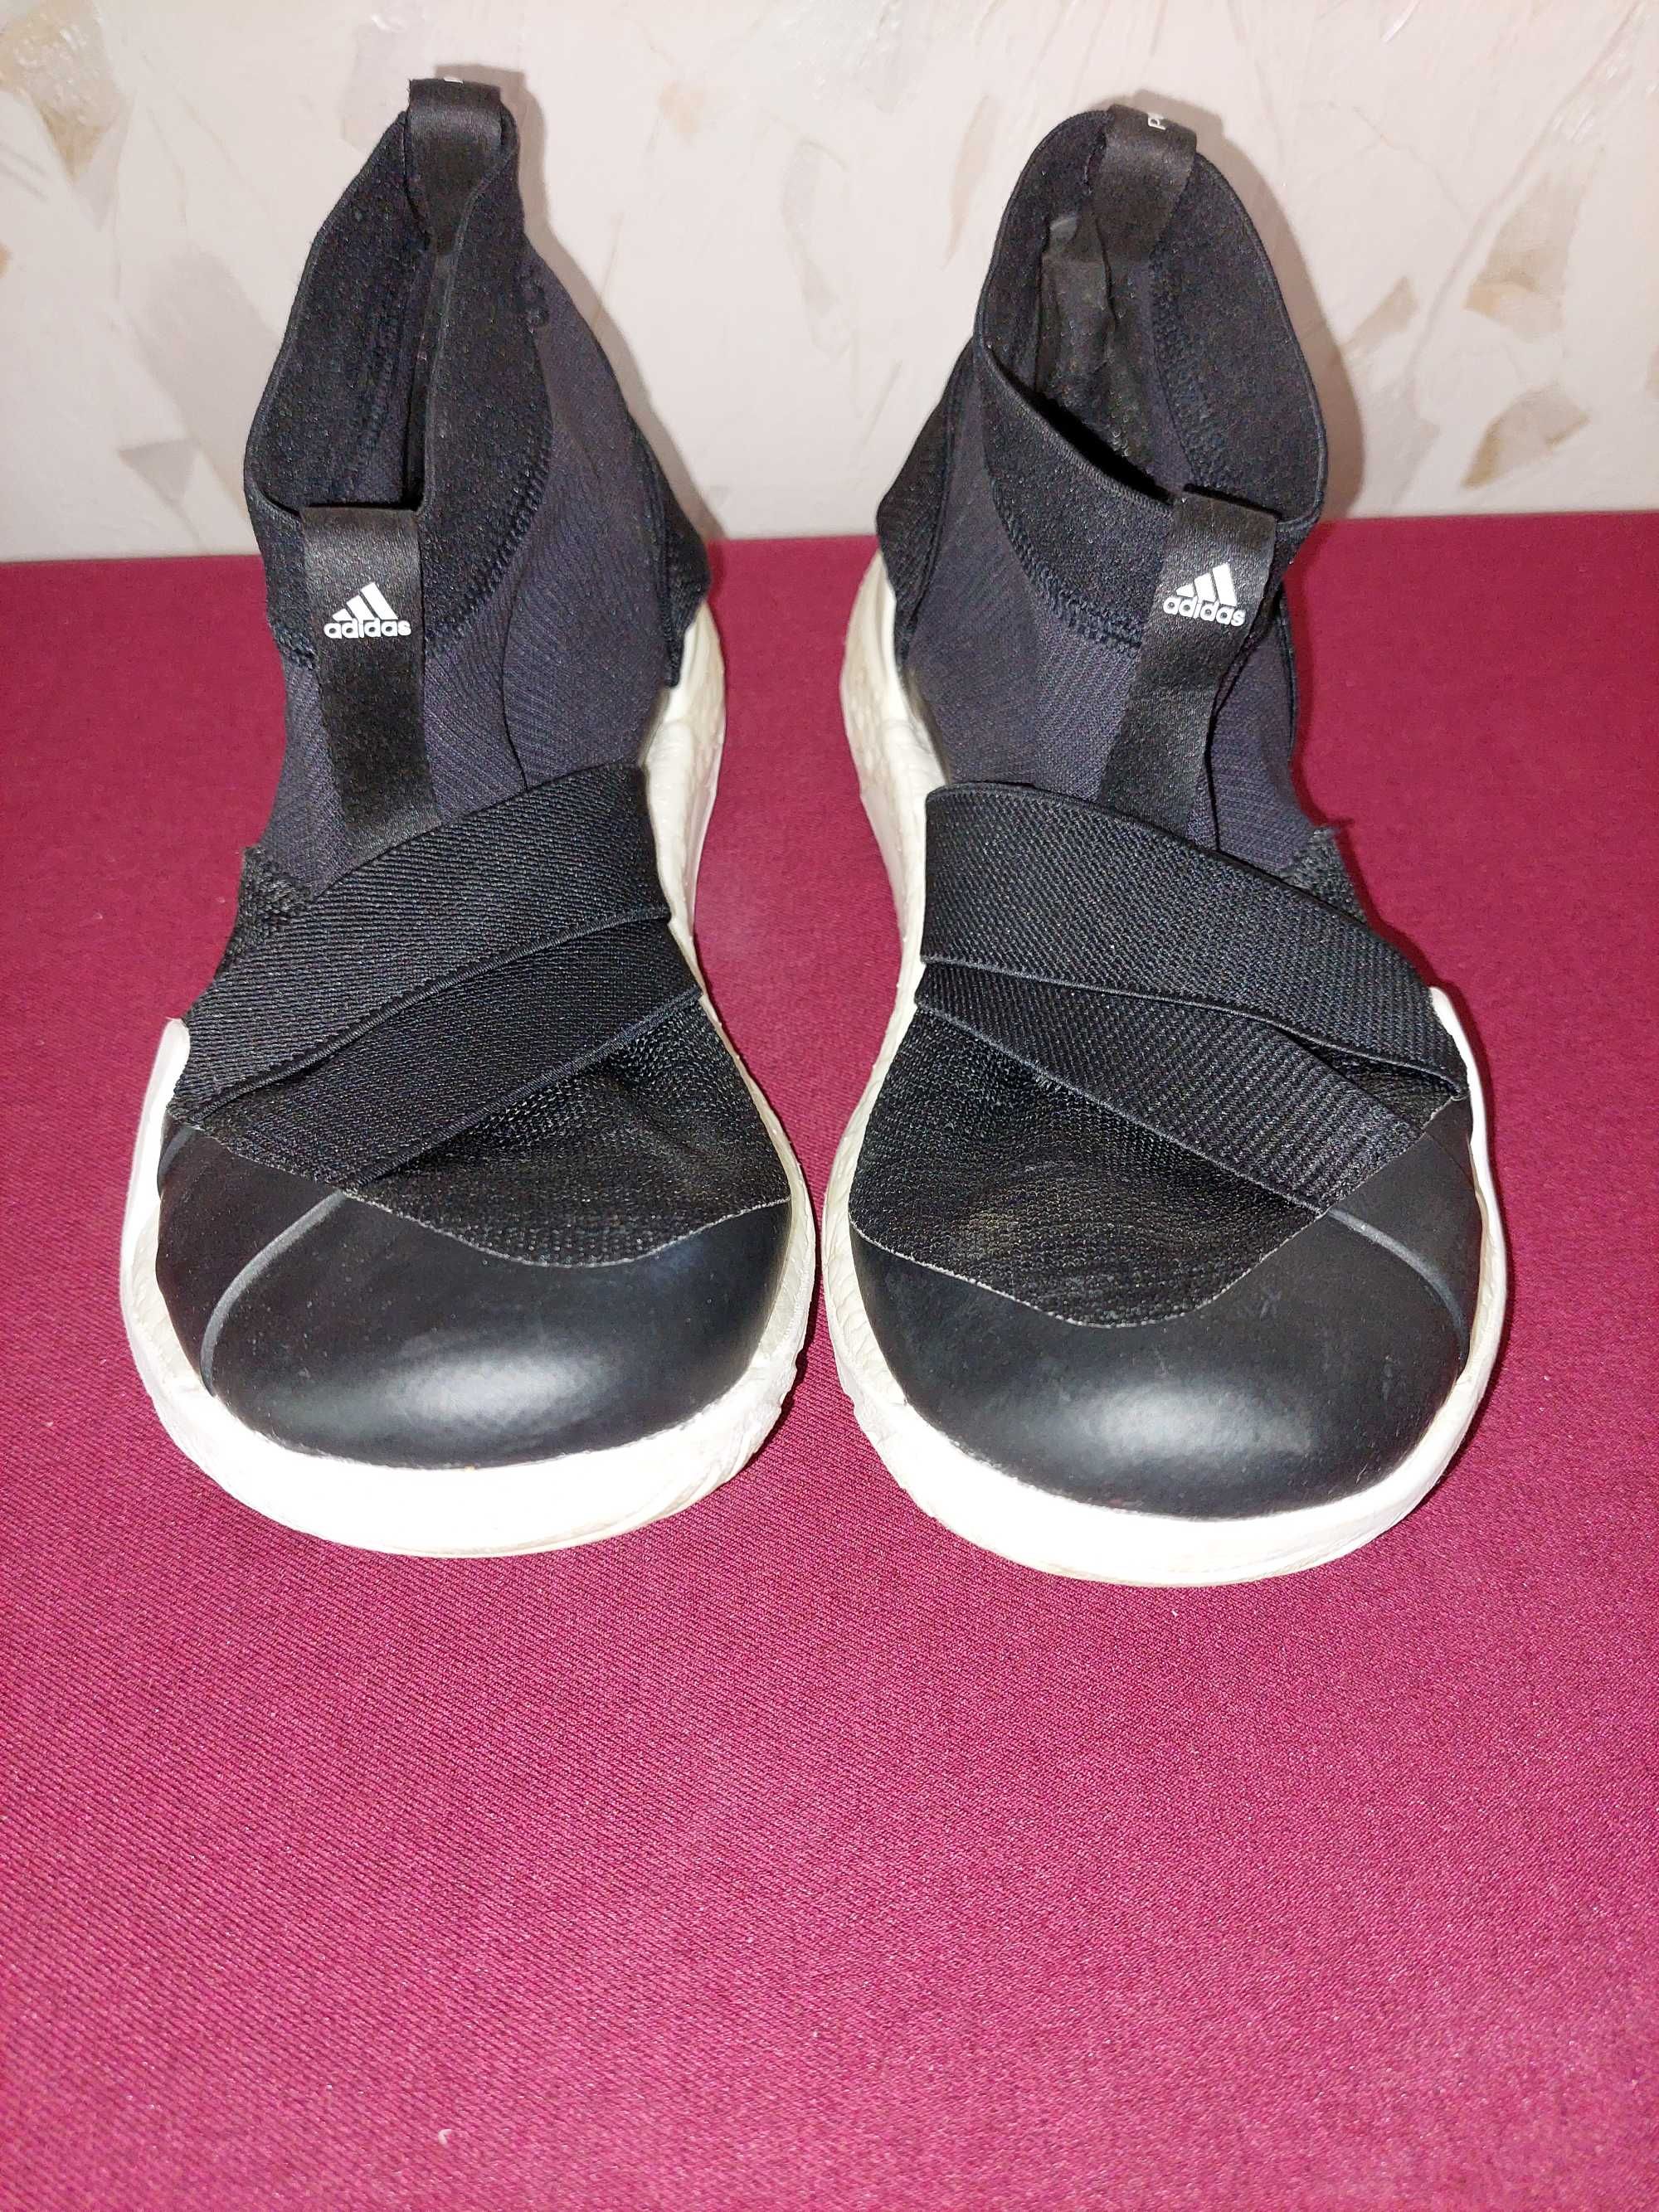 Дамски елегантни обувки, дамски спортни обувки, дамски чехли, 39, 40 н